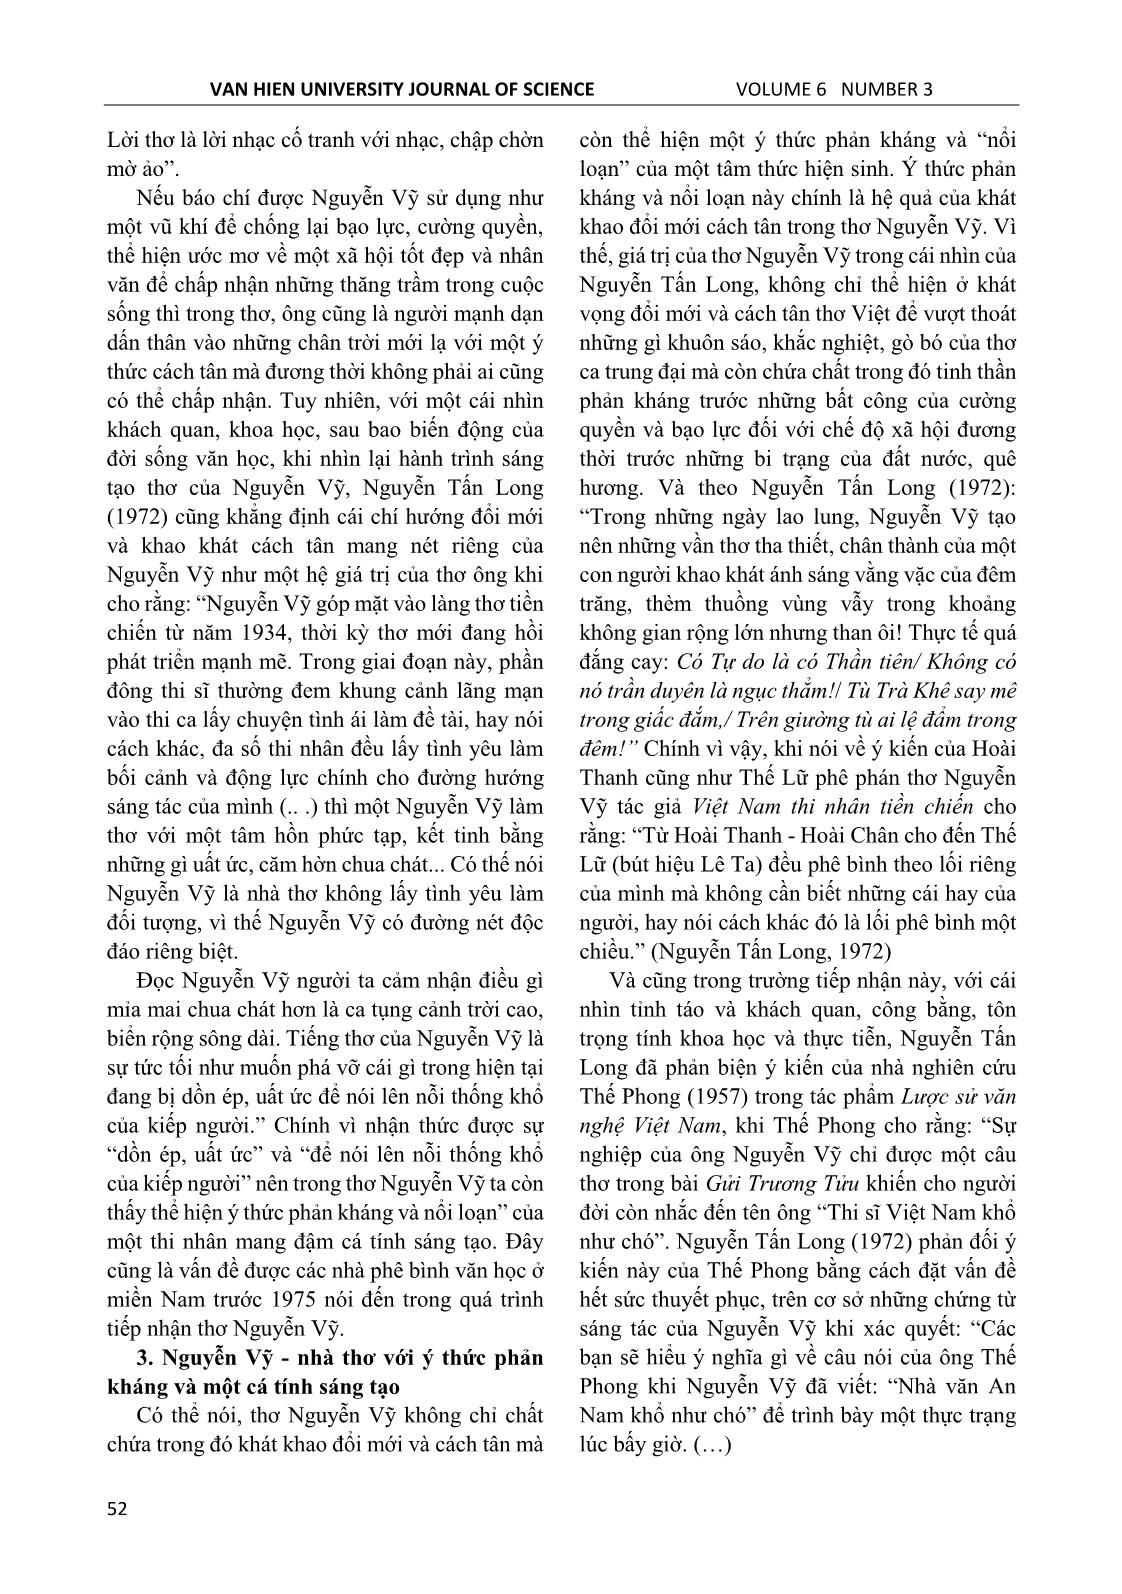 Thơ Nguyễn Vỹ trong tiếp nhận của phê bình văn học ở miền Nam giai đoạn 1954 – 1975 trang 4